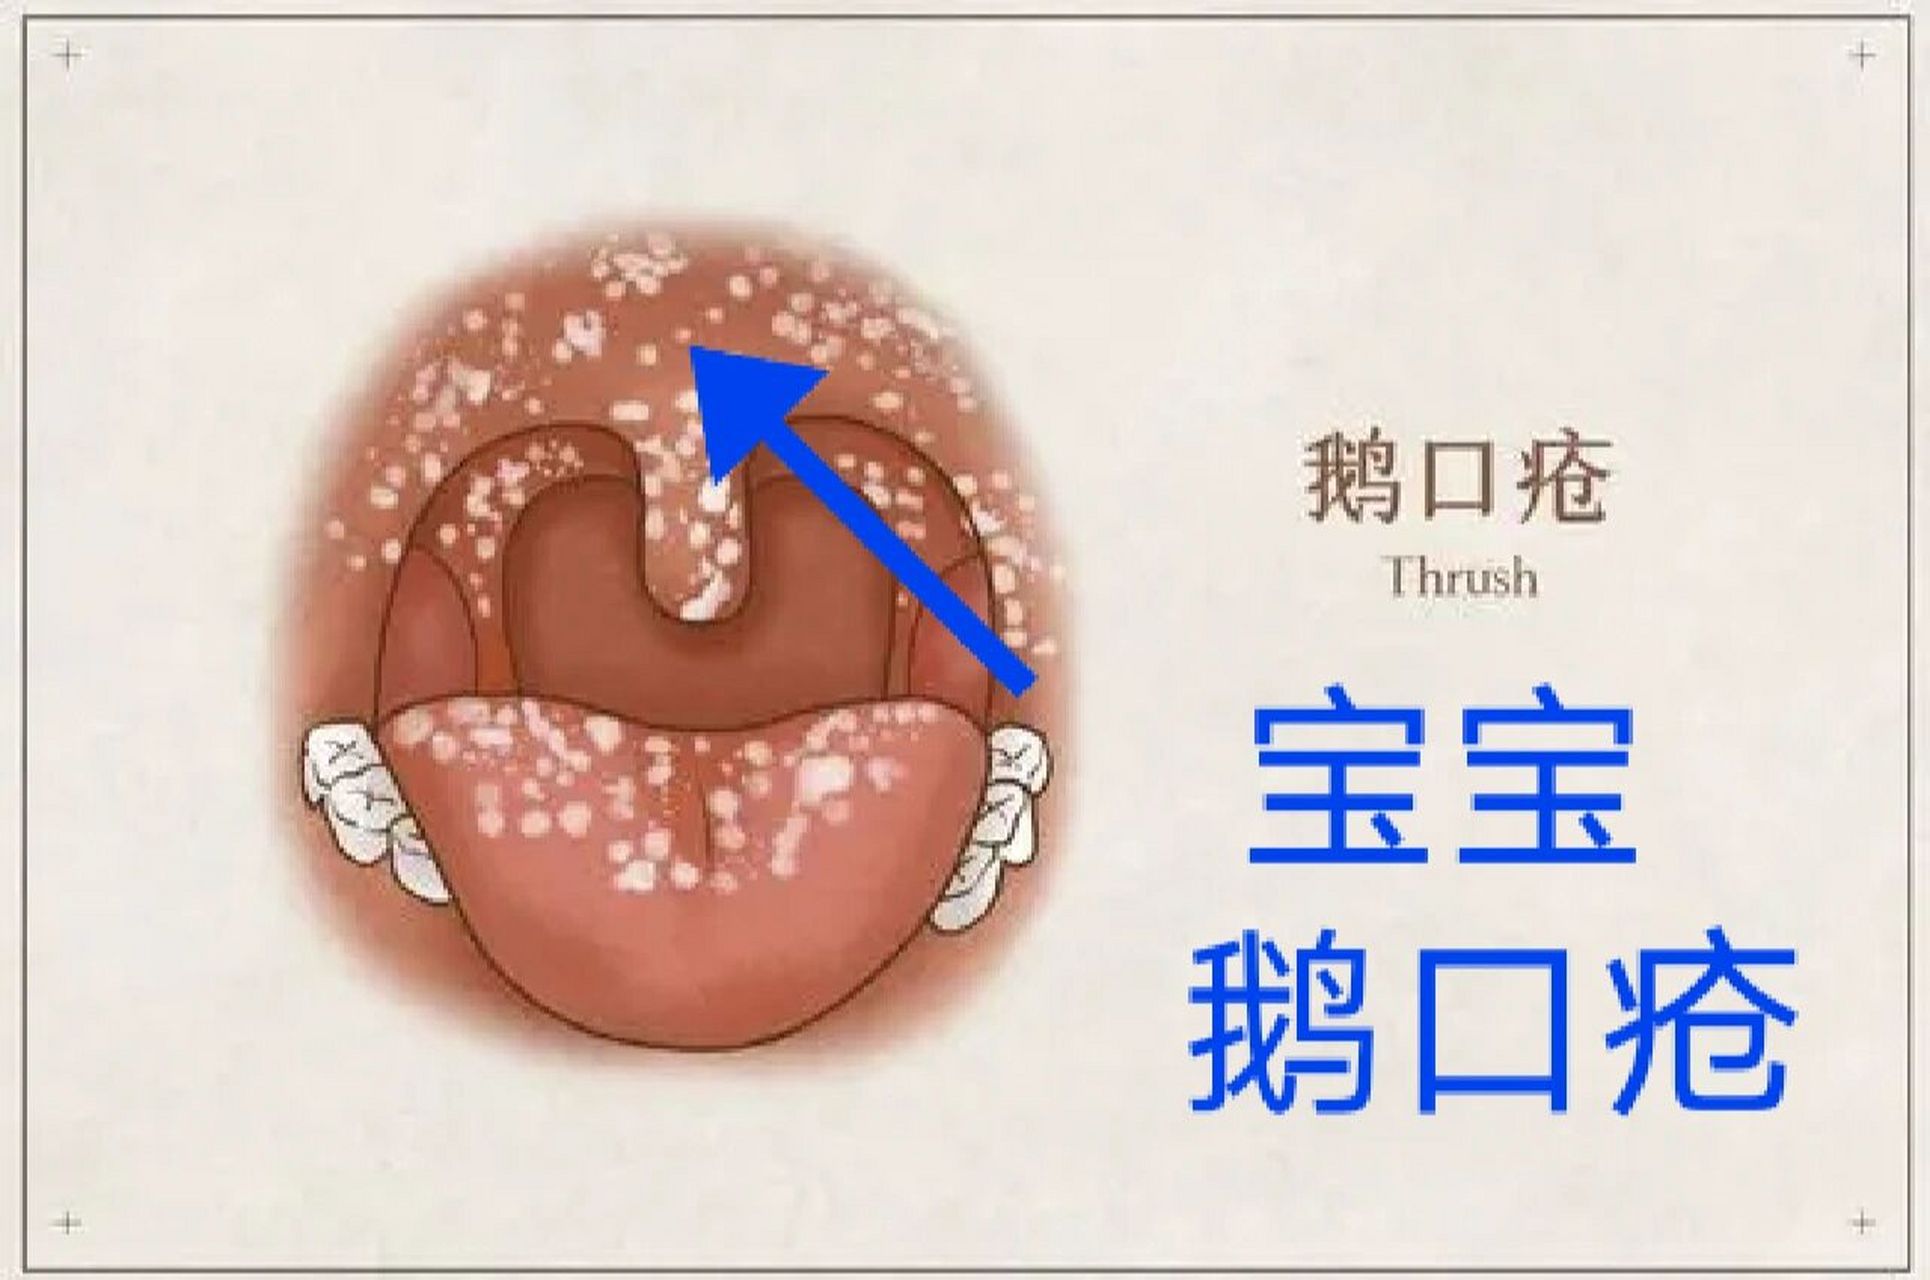 科普:一文读懂宝宝鹅口疮 96症状 鹅口疮为白色念珠菌在口腔粘膜